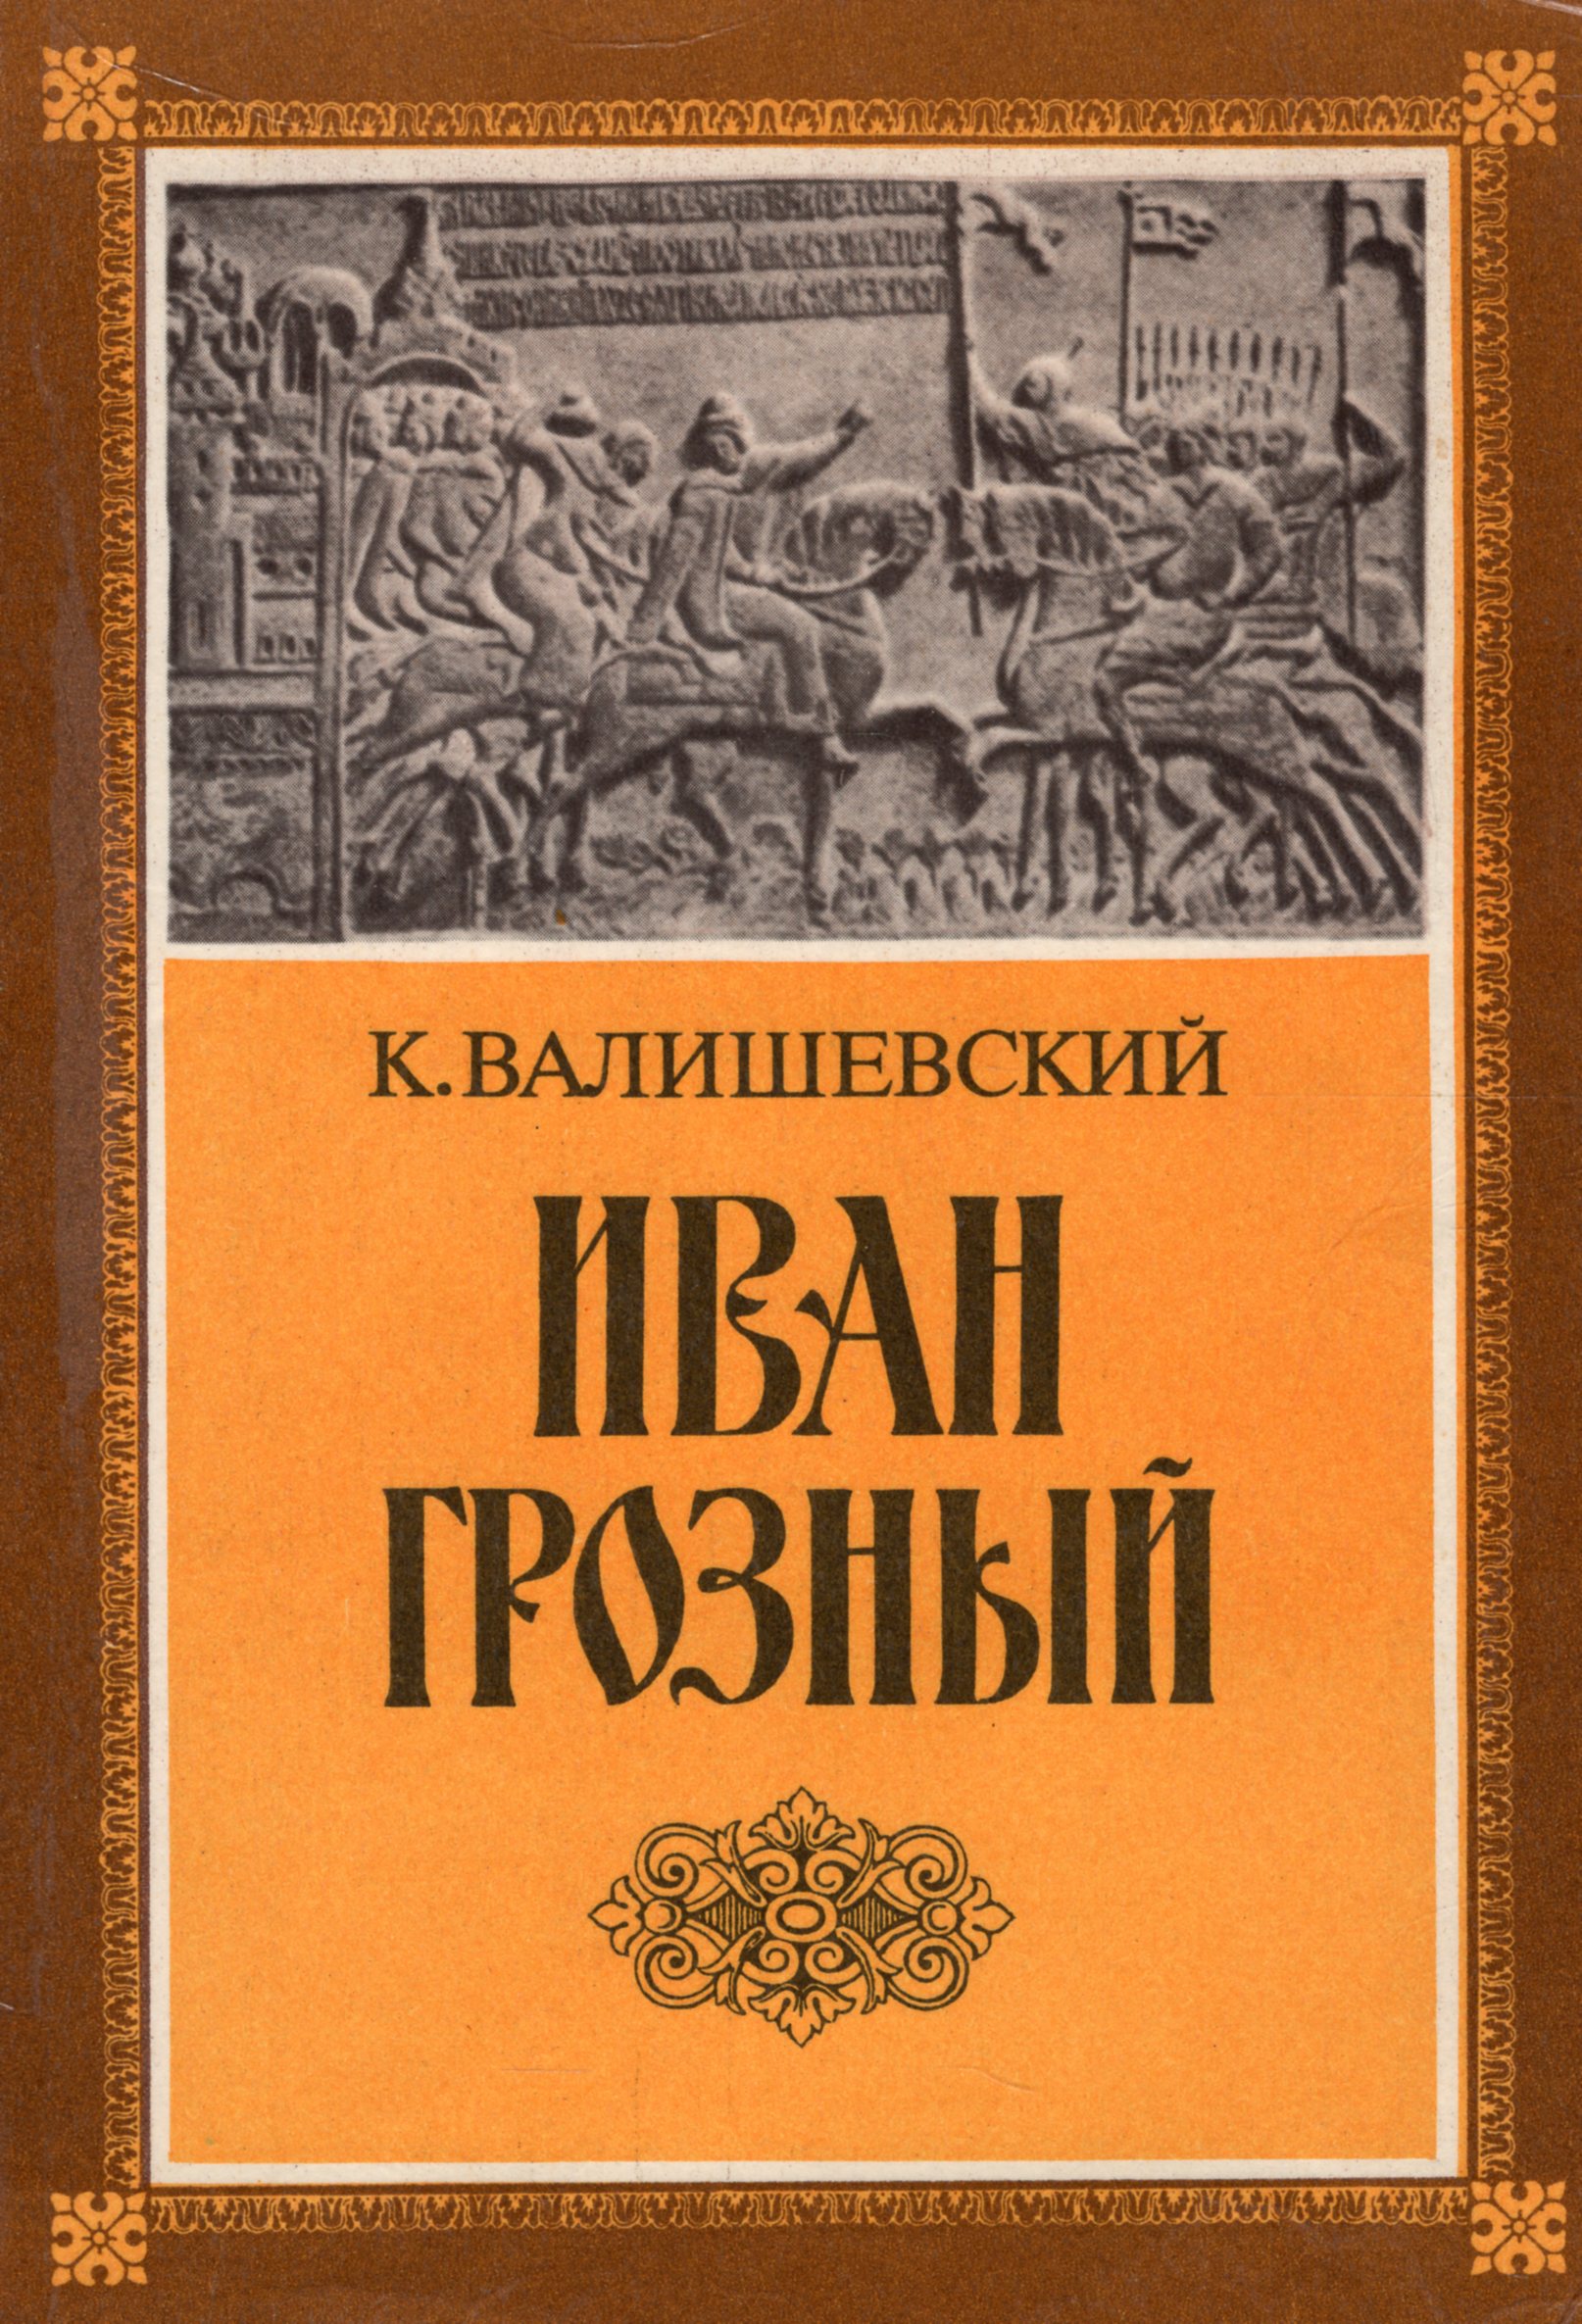 Книги про ивана грозного. Книги времен Ивана Грозного.